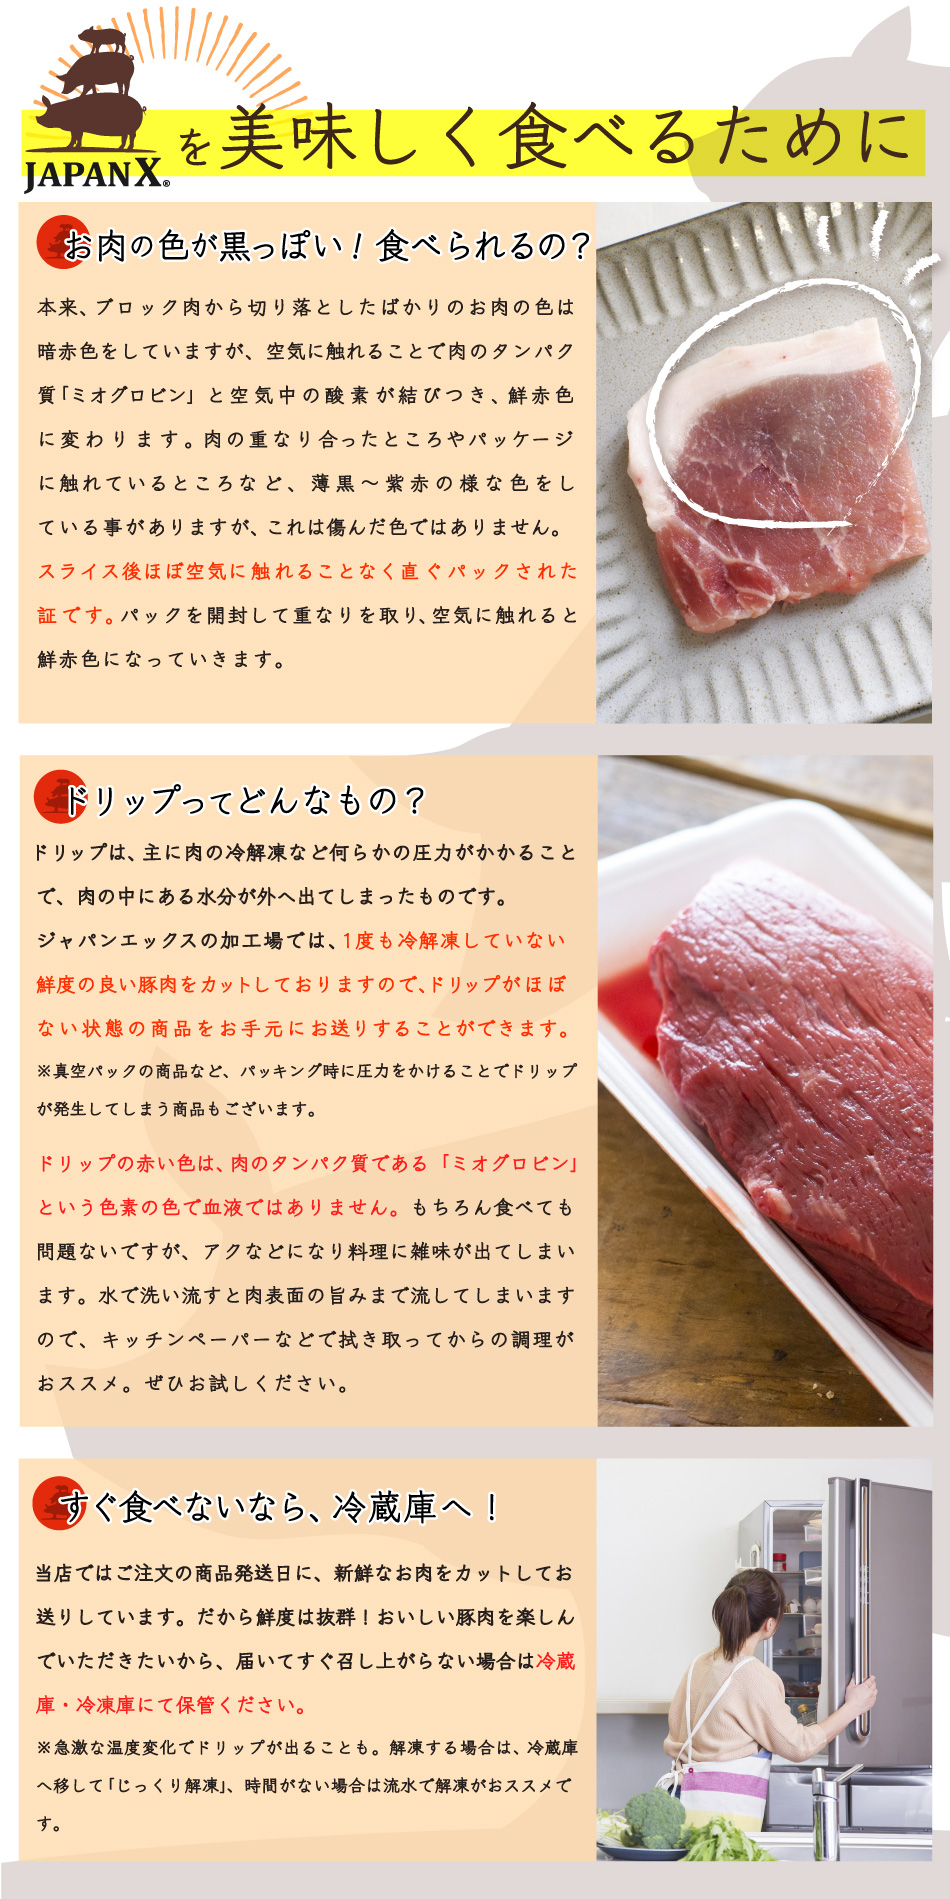 JAPAN X,ジャパンエックス,JAPAN X,ステーキセット,ジャパンエックスを美味しく食べるために,肉の色が変,食べられるの,食べていいの,ドリップってなに？,ドリップは血ではない！,届いてすぐ食べないなら冷蔵庫へ,